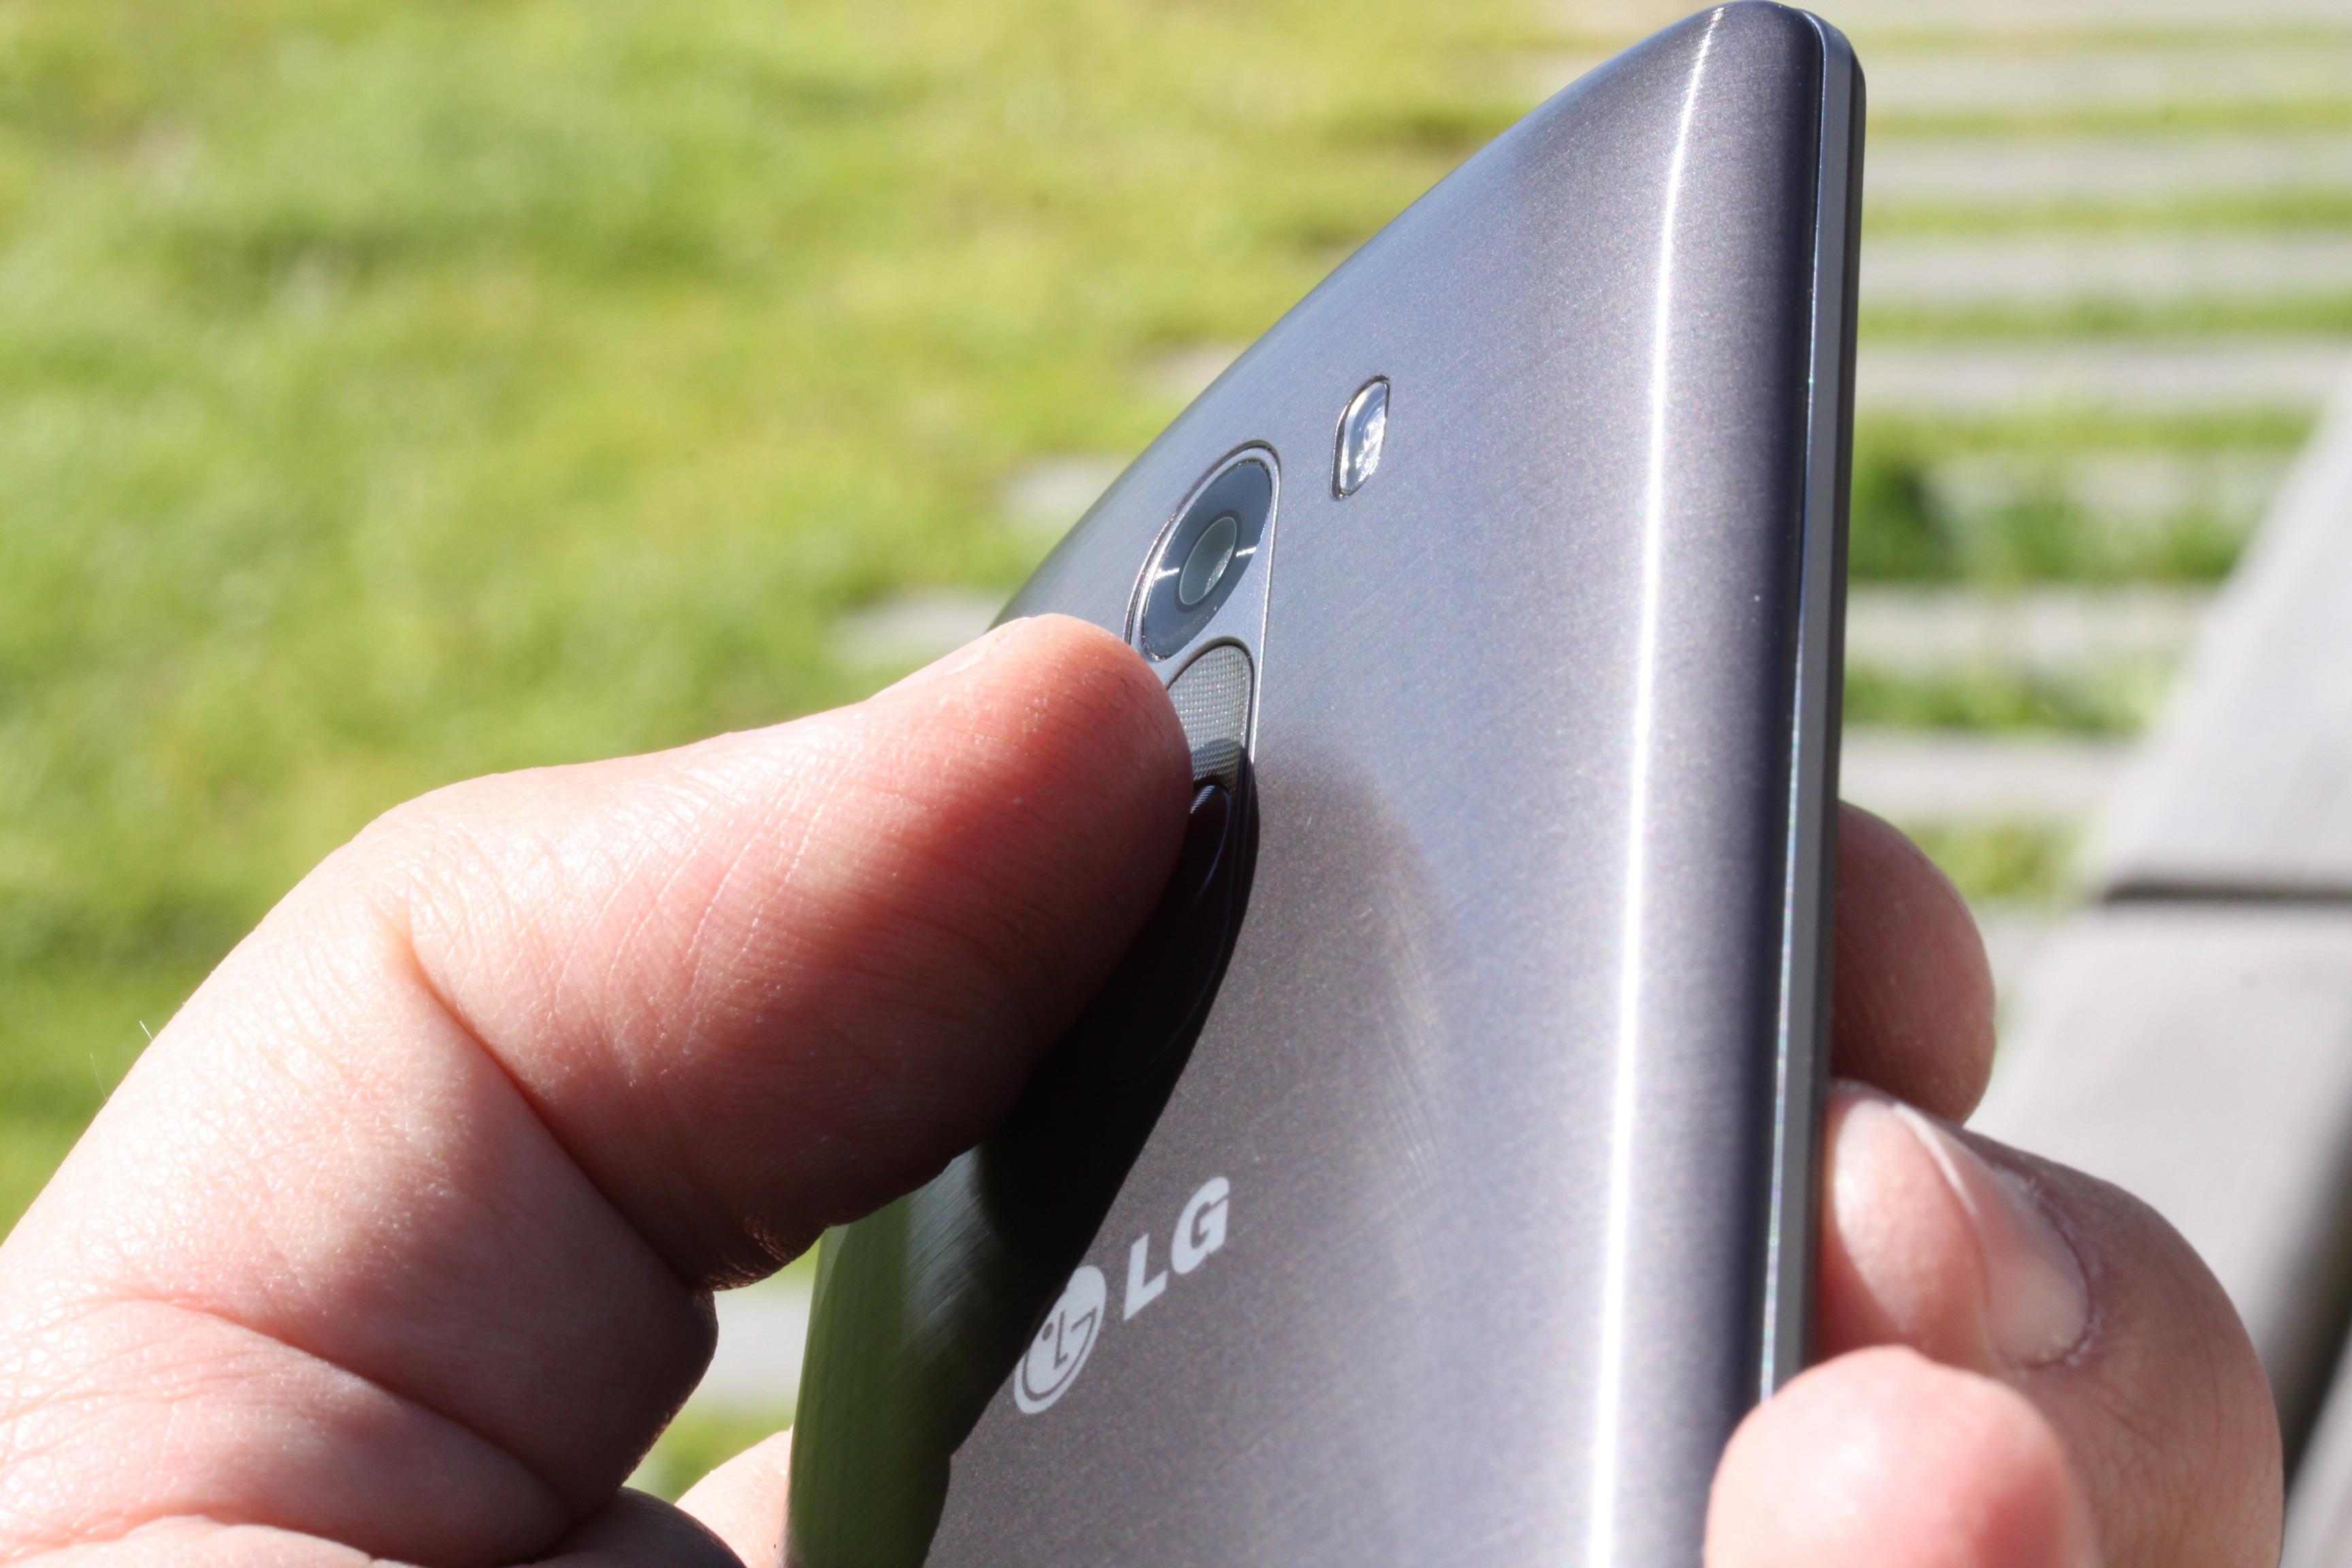 Som i flere andre modeller har LG plassert alle de fysiske tastene på baksiden av telefonen. Liker du ikke plasseringen har de uansett gjort det enkelt for deg å bruke telefonen utelukkende via skjermen.Foto: Espen Irwing Swang, Amobil.no